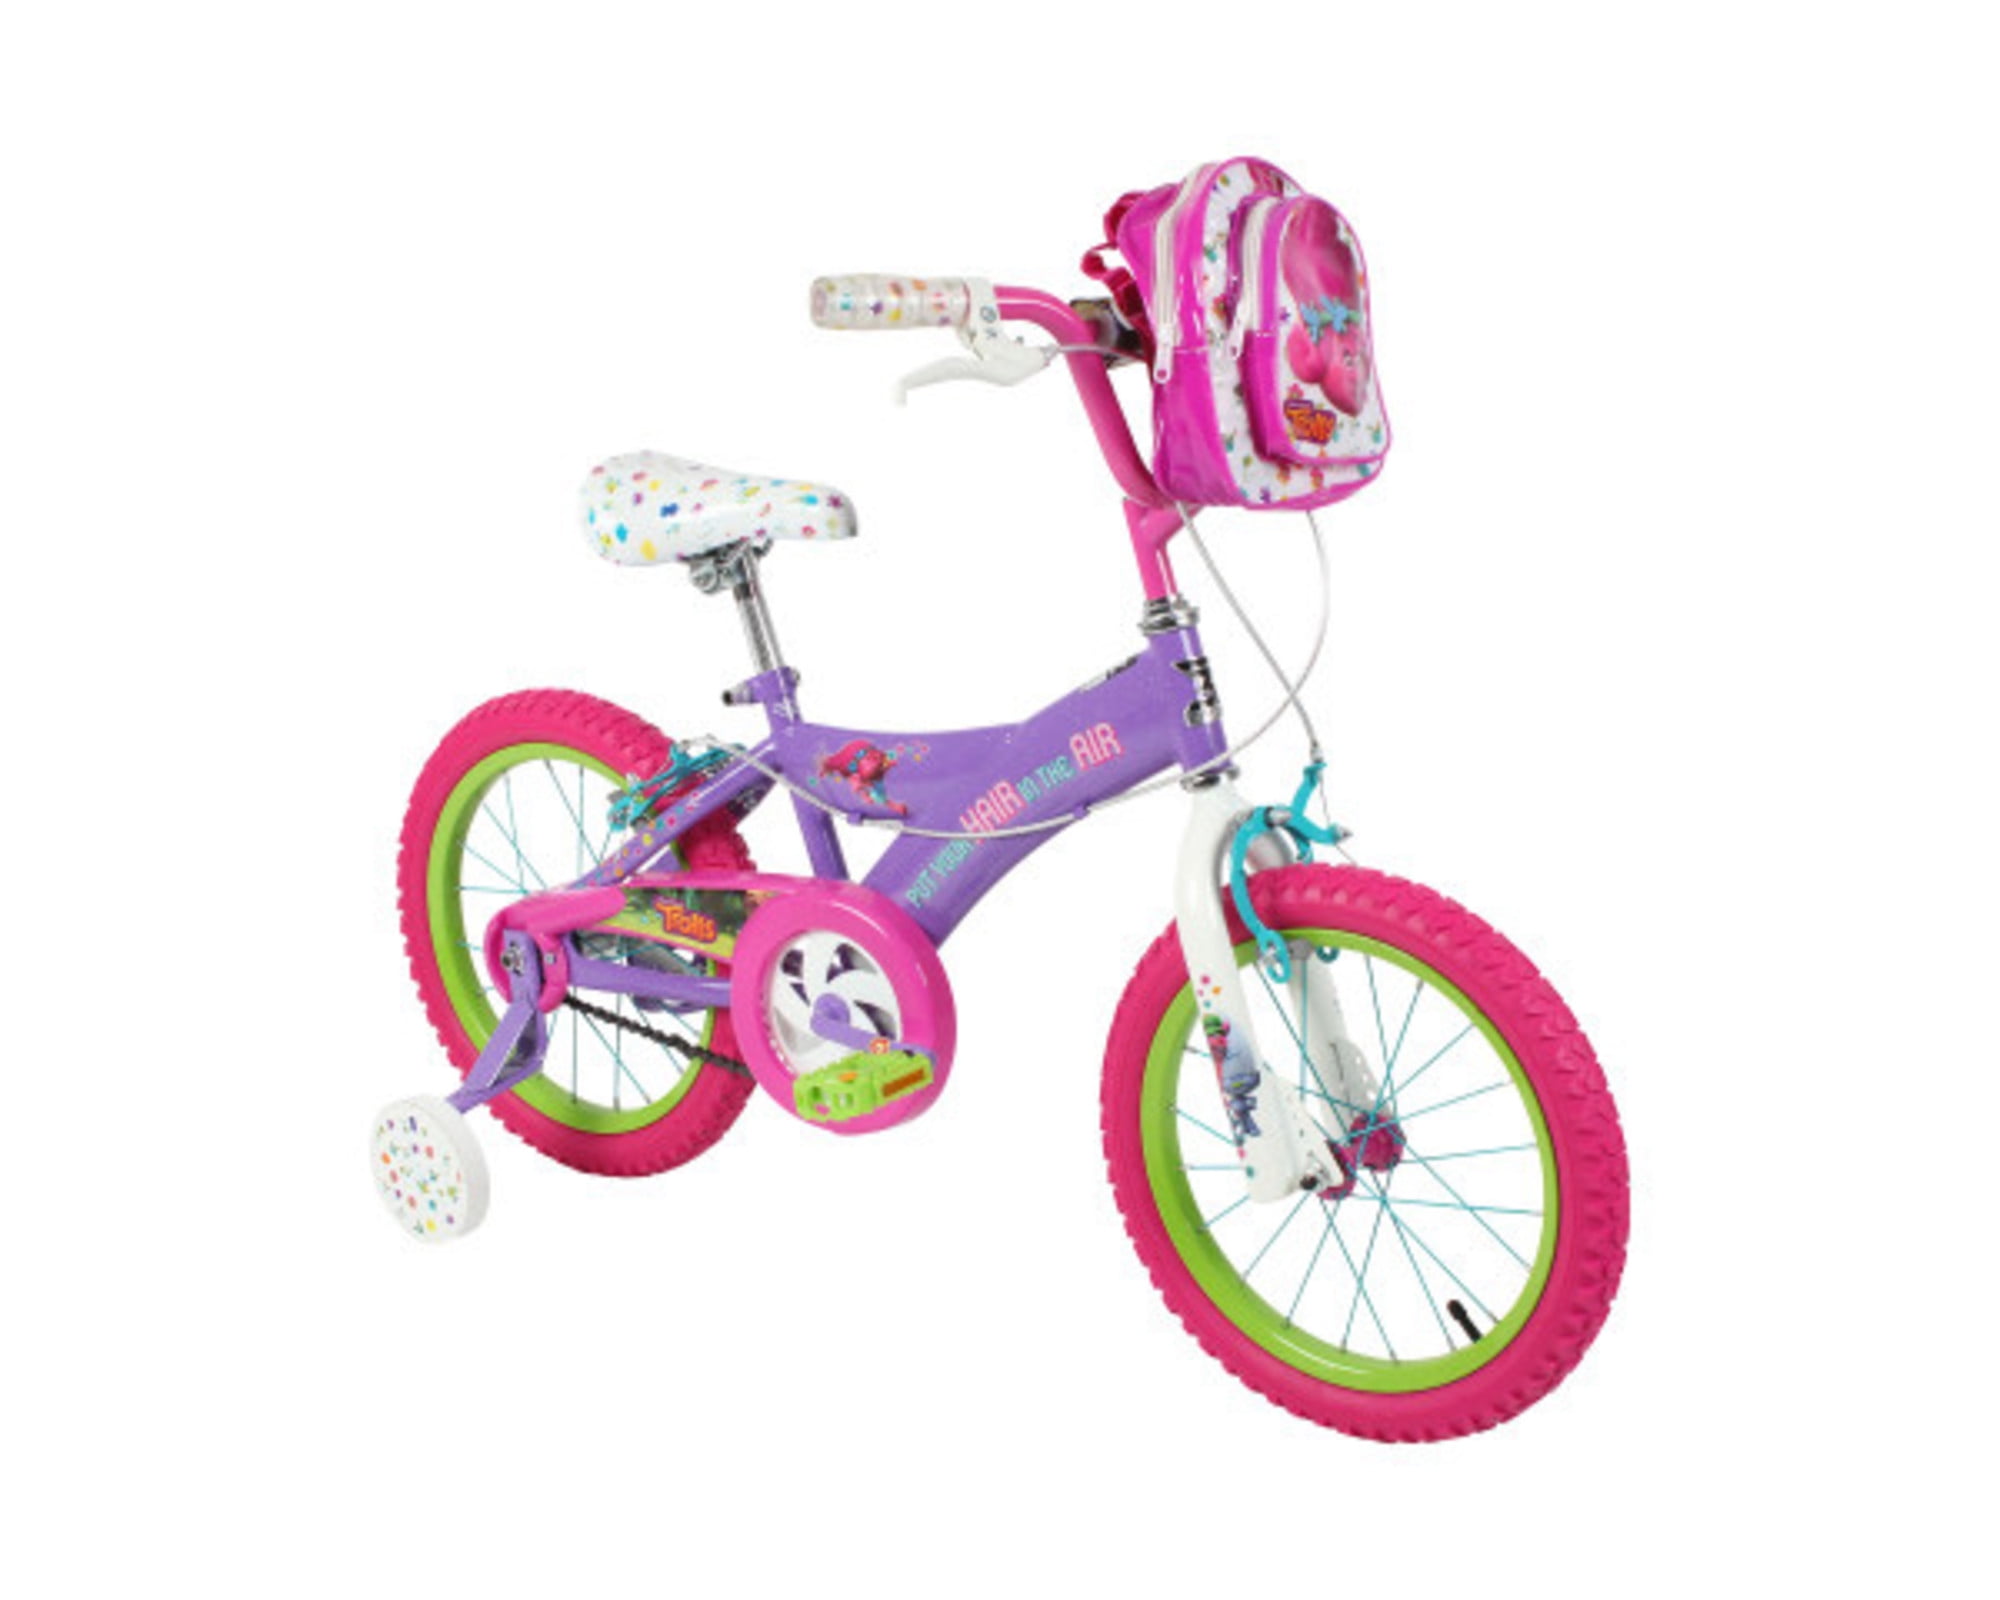 Schwinn S0600WM-L LOL Surprise kids bike pink single speed 16-inch wheel 